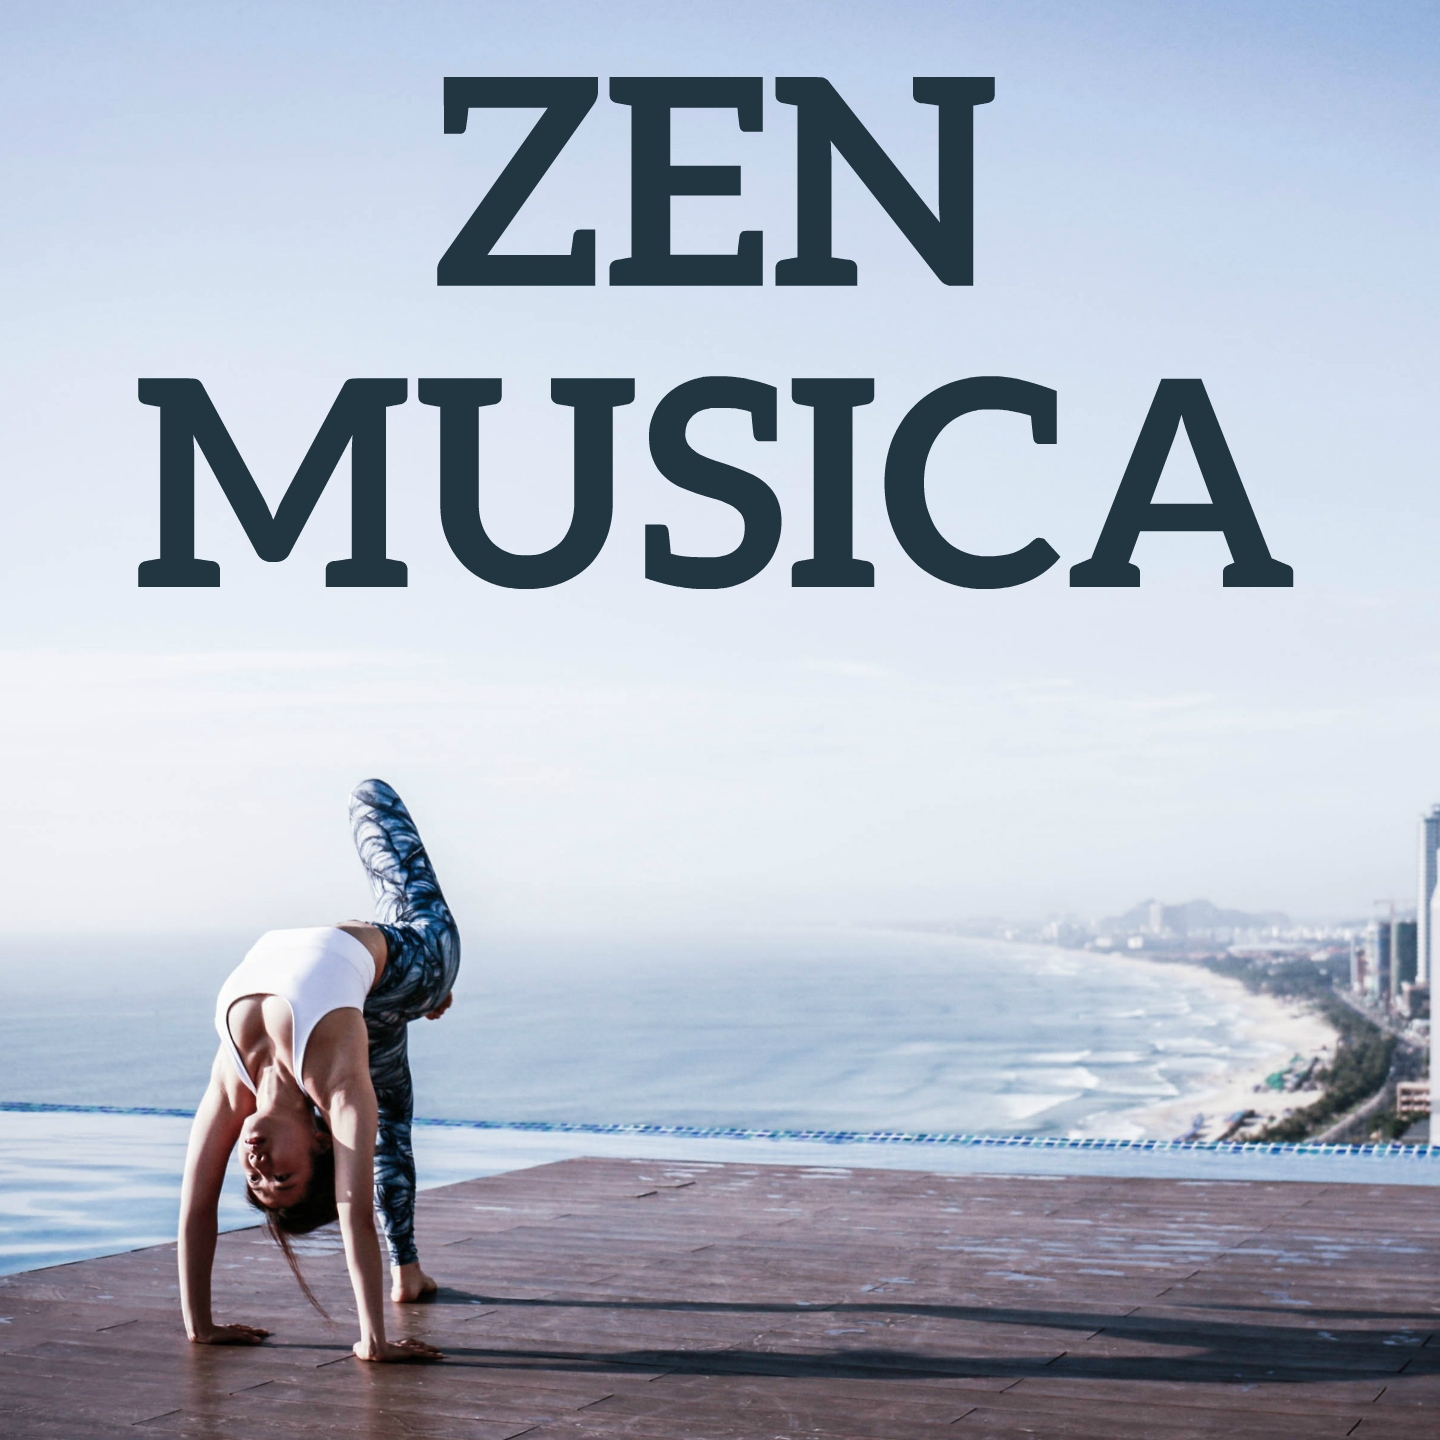 Zen Musica